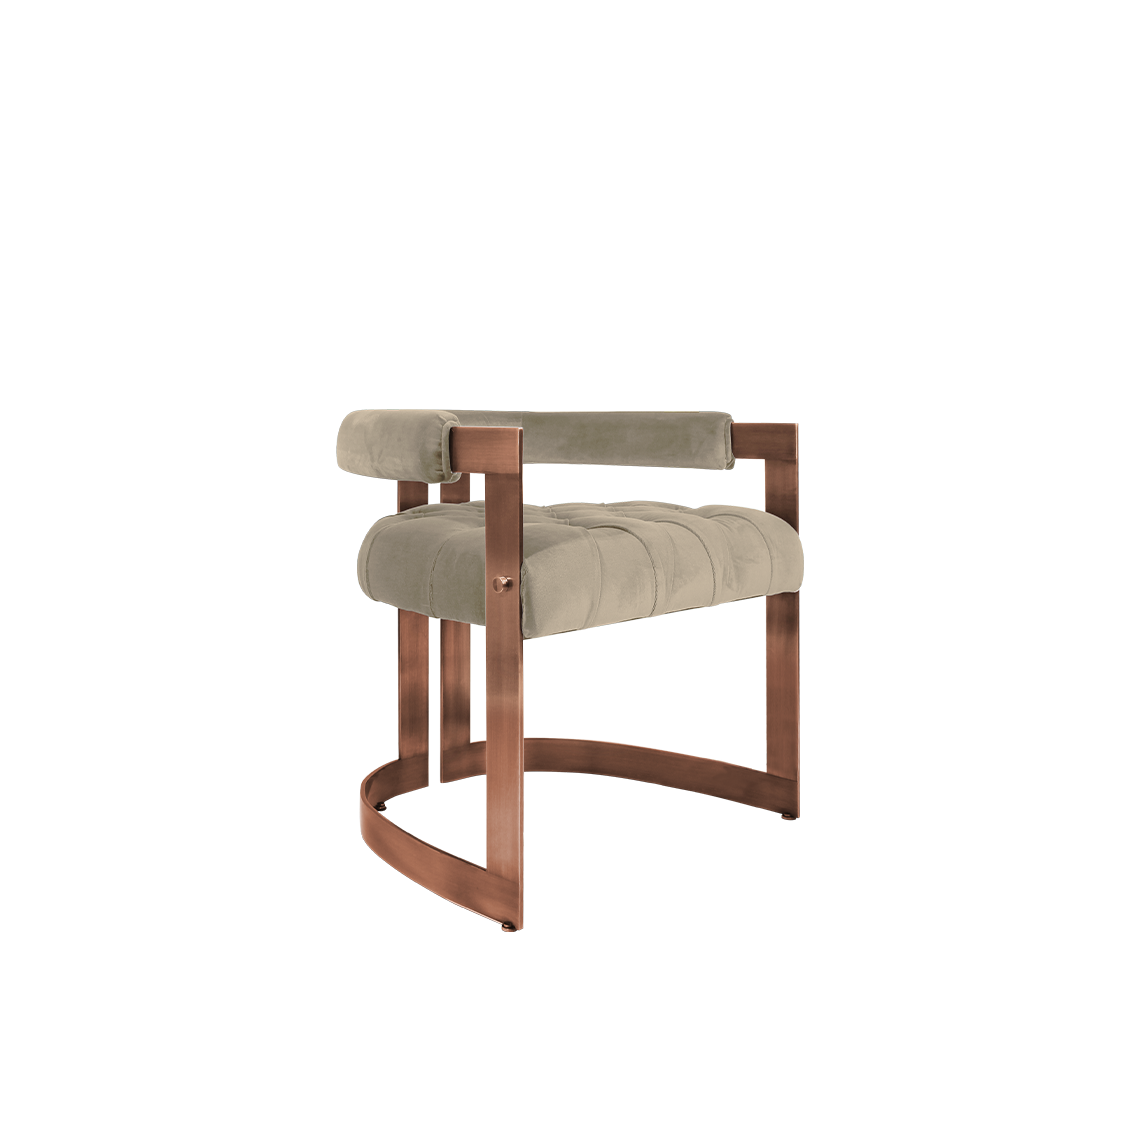 Winfrey Dining Chair